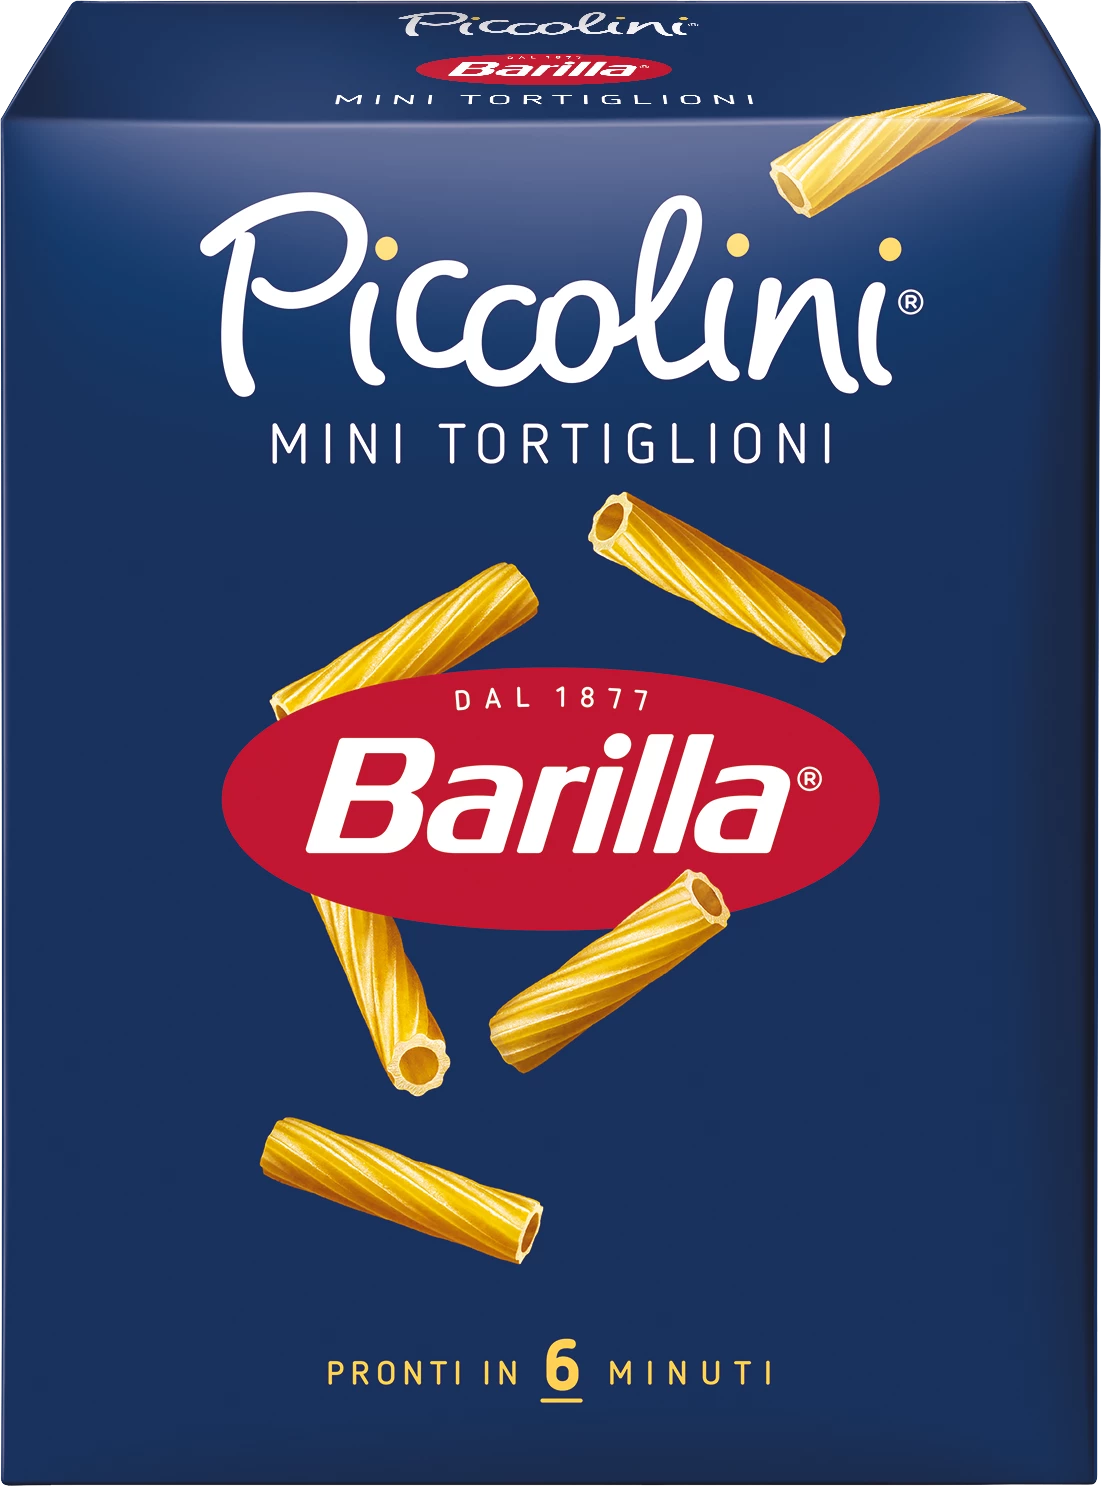 Mini Tortiglioni, 500g - BARRILa